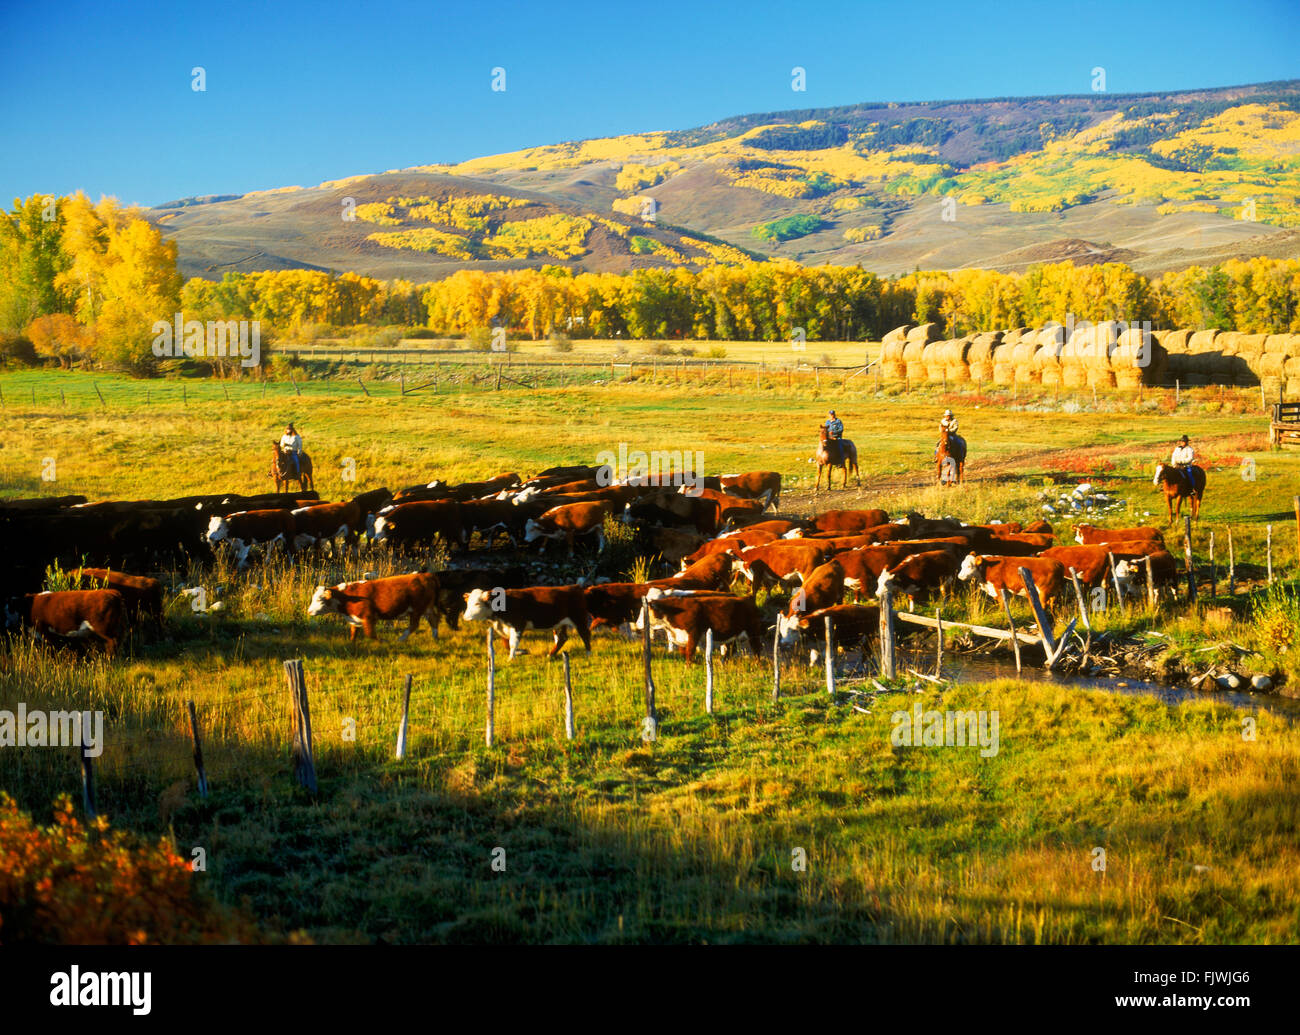 Cowboys auf dem Pferderücken hüten Rinder in Corrals auf Ranch Ohio Creek im Herbst in der Nähe der Rocky Mountains von Colorado Stockfoto